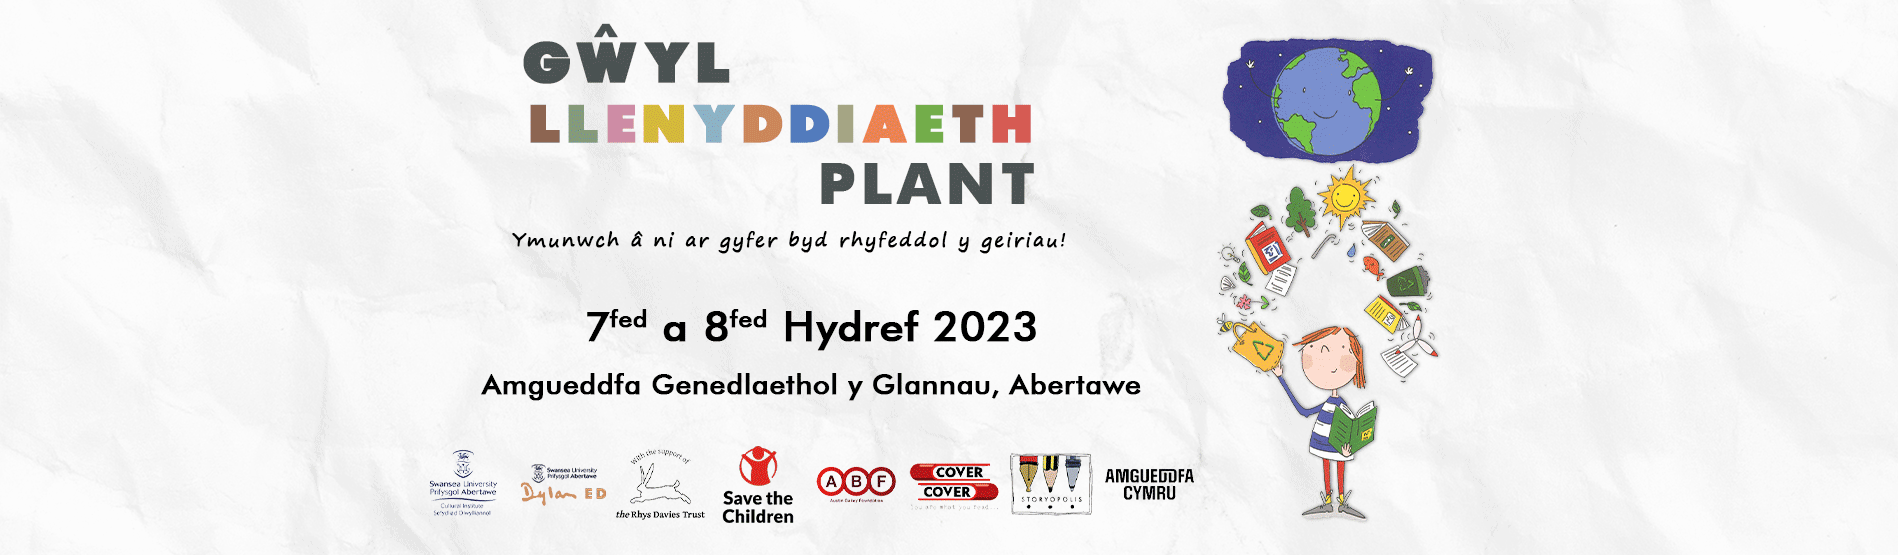 Gwyl Llenyddiaeth Plant Header